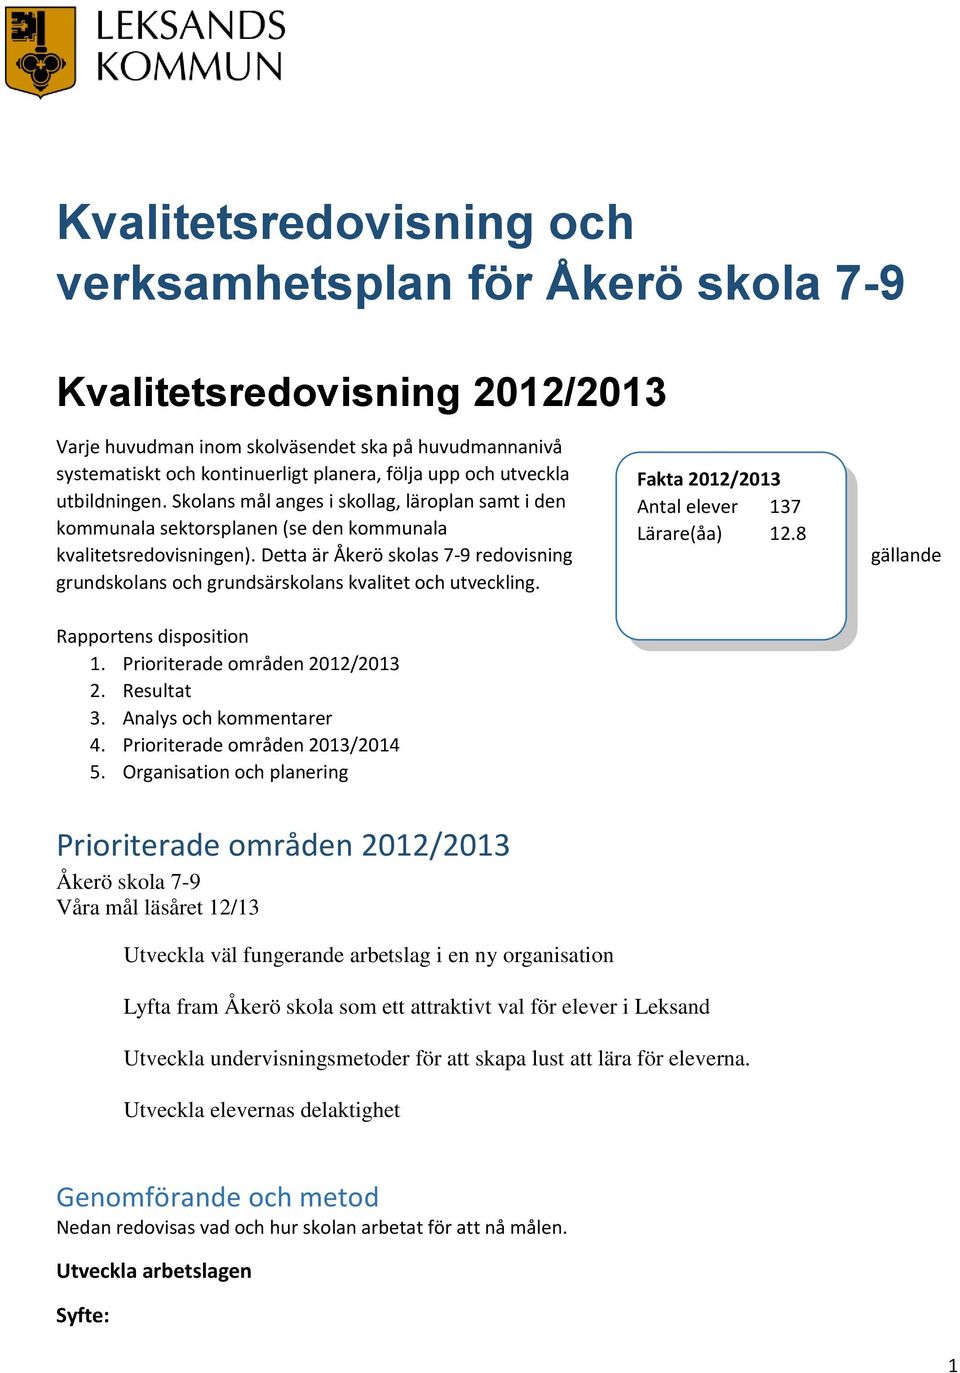 Detta är Åkerö skolas 7-9 redovisning grundskolans och grundsärskolans kvalitet och utveckling. Rapportens disposition 1. Prioriterade områden 2012/2013 2. Resultat 3. Analys och kommentarer 4.